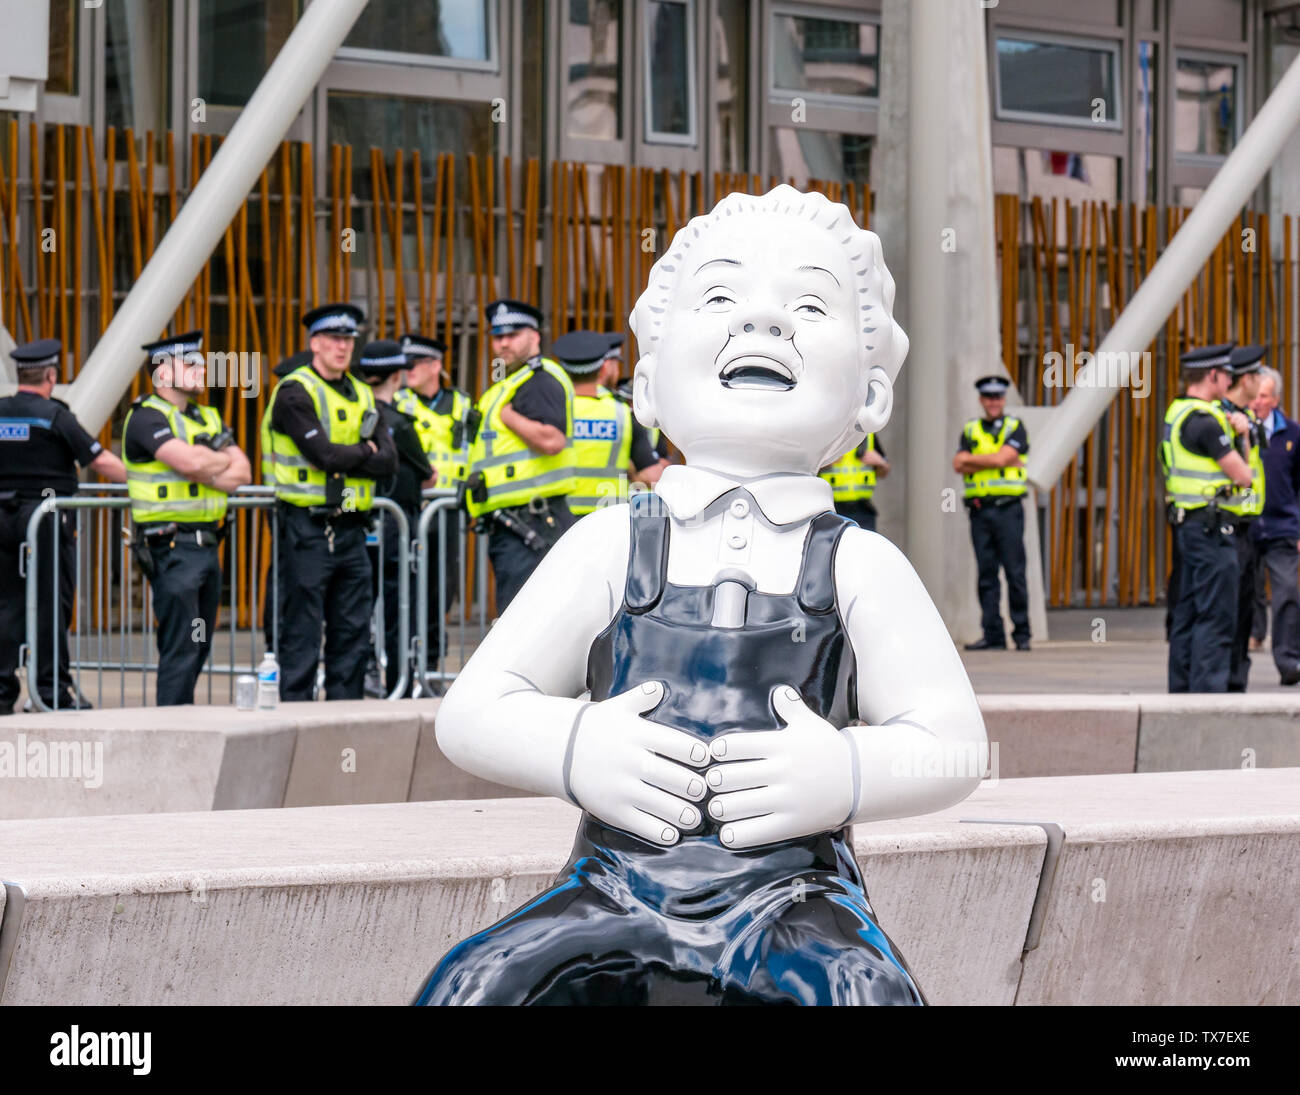 Oor Wullie grand seau Route de l'art de Peter Davidson, Pariament écossais au cours de protester avec la police, Holyrood, Édimbourg, Écosse, Royaume-Uni Banque D'Images